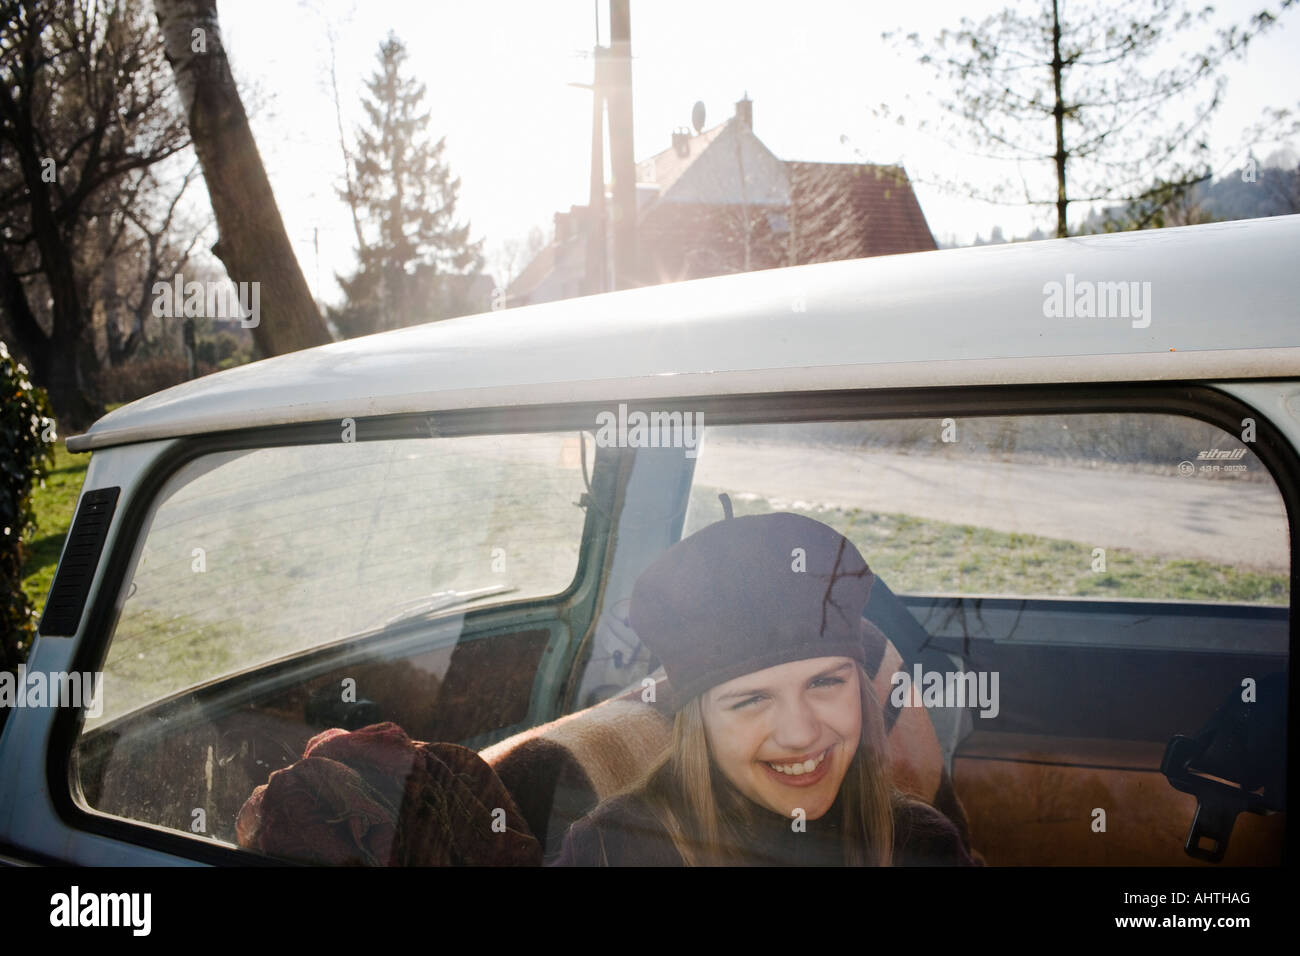 La ragazza (10-12) in seduta posteriore della vettura, sorridente, vista attraverso la finestra Foto Stock